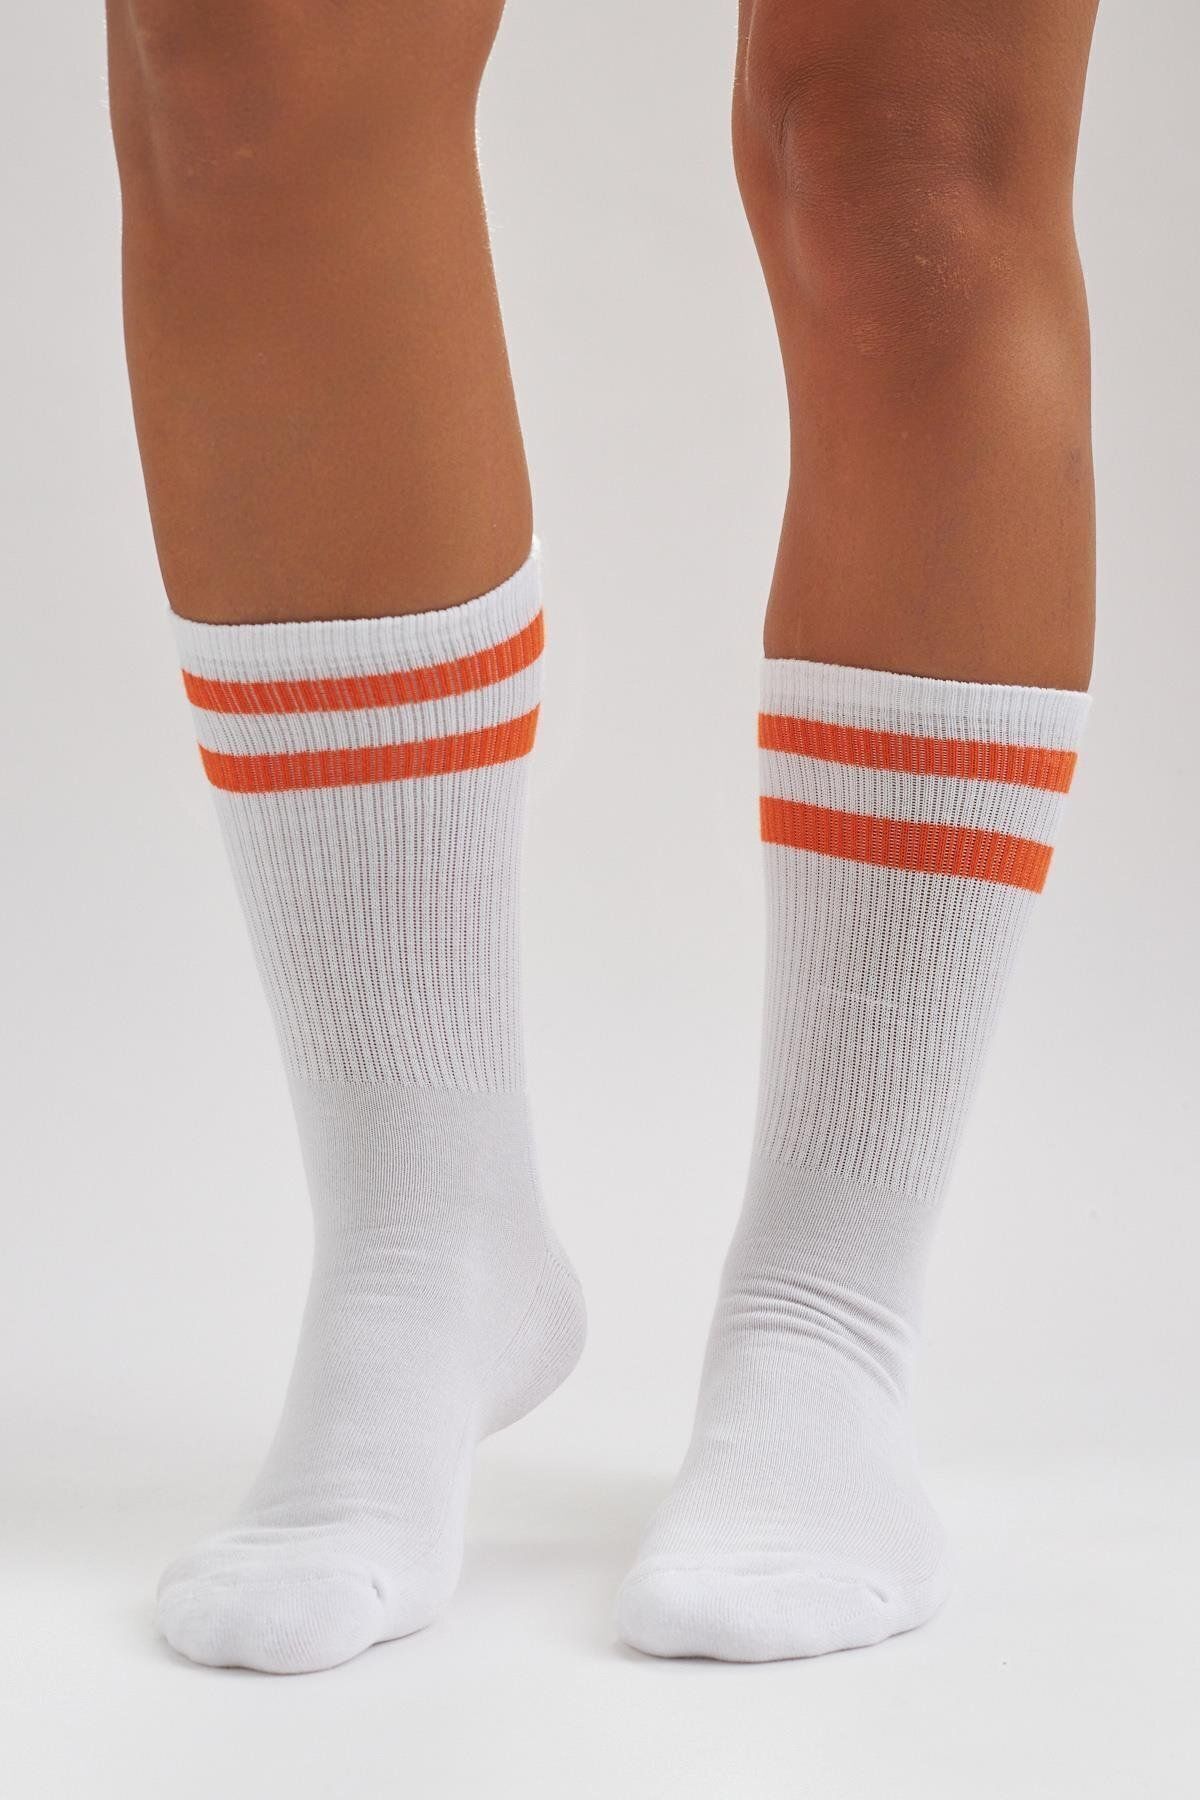 Katia & Bony Erkek Havlu Taban Çizgili Soket Çorap Beyaz/turuncu